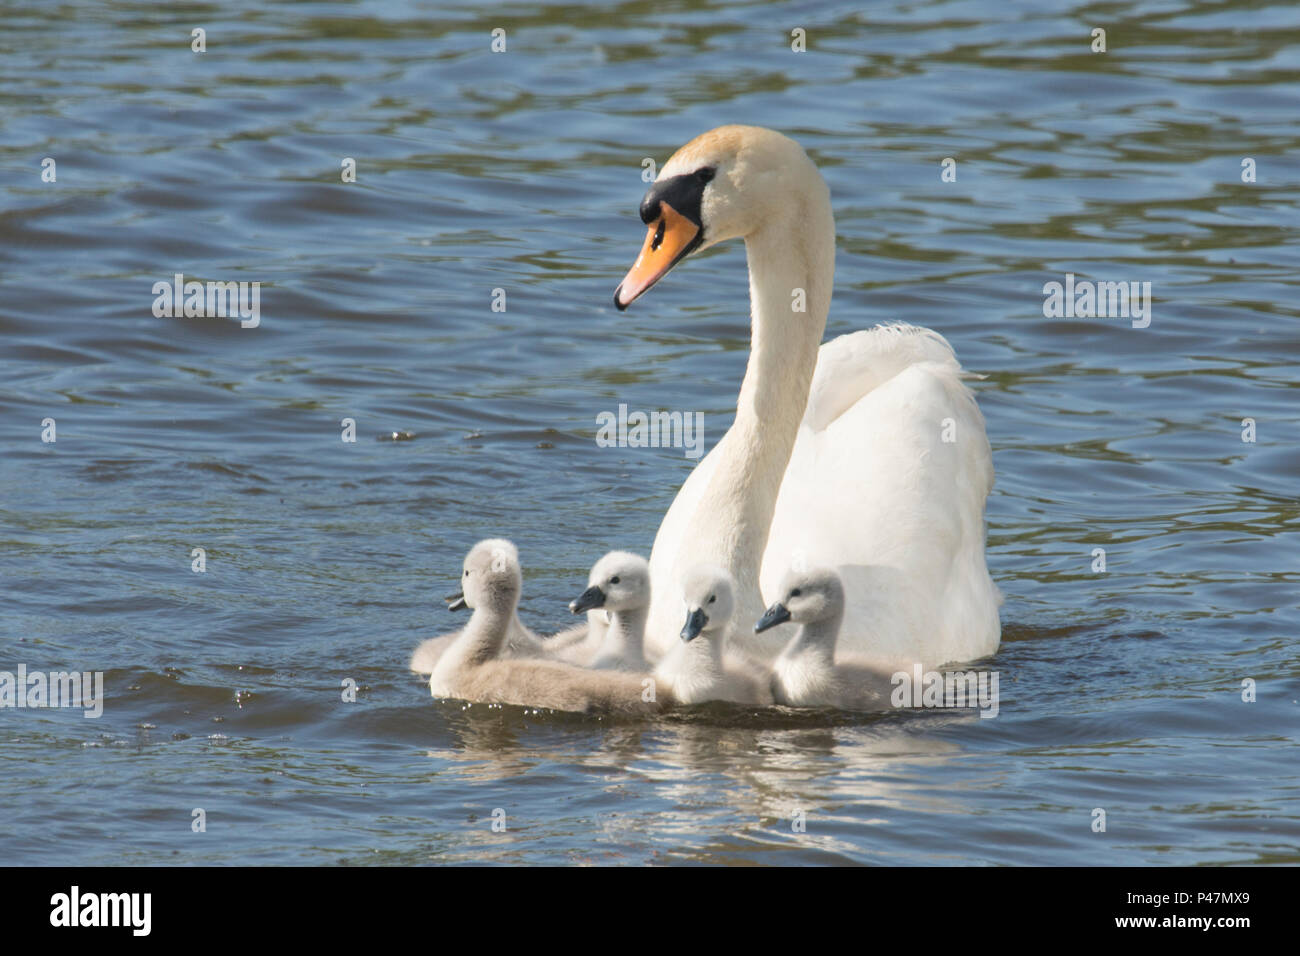 Cygne muet, mère avec de jeunes bébés, cygnets, nageant ensemble, Cygnus olor, Norfolk Broads, le fleuve de l'Ant, UK. Peut Banque D'Images